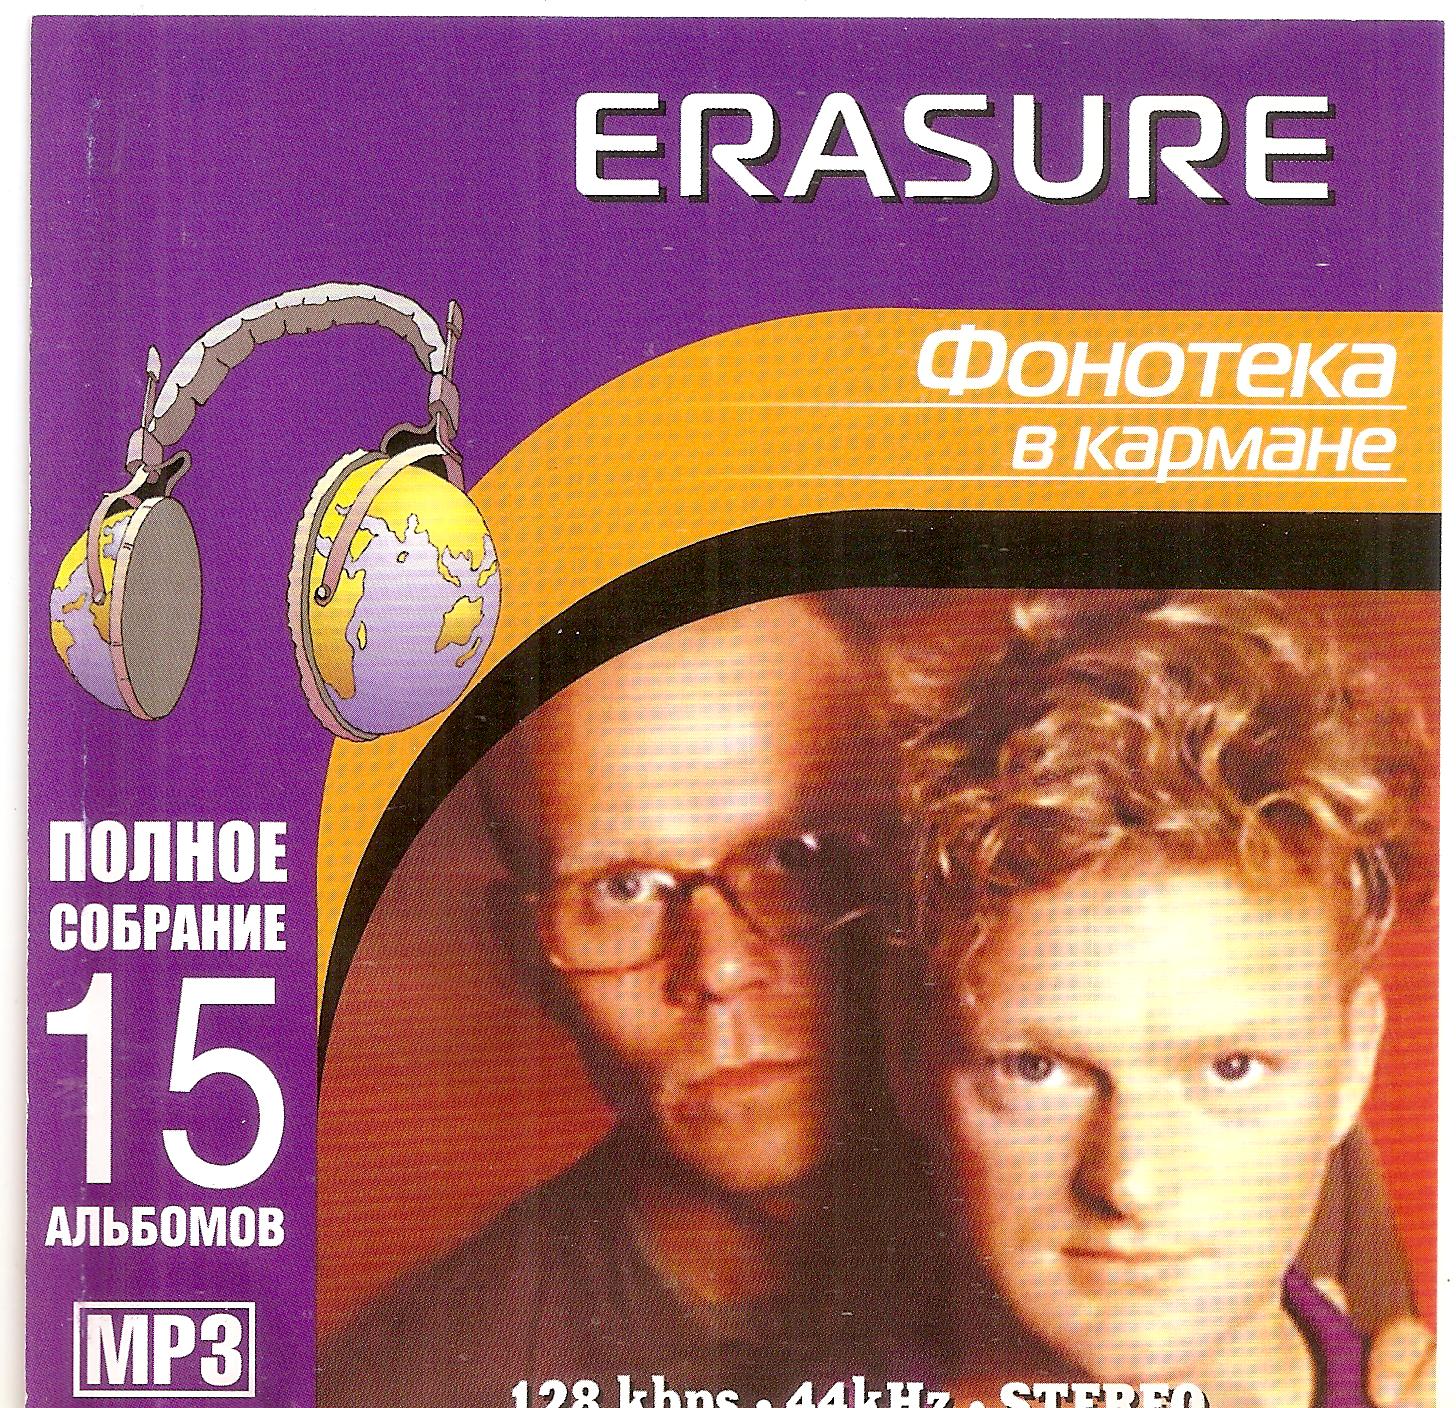 Песня фонотека. Erasure группа CD. Erasure 1995 Erasure. Erasure 2021. Фонотека в кармане.